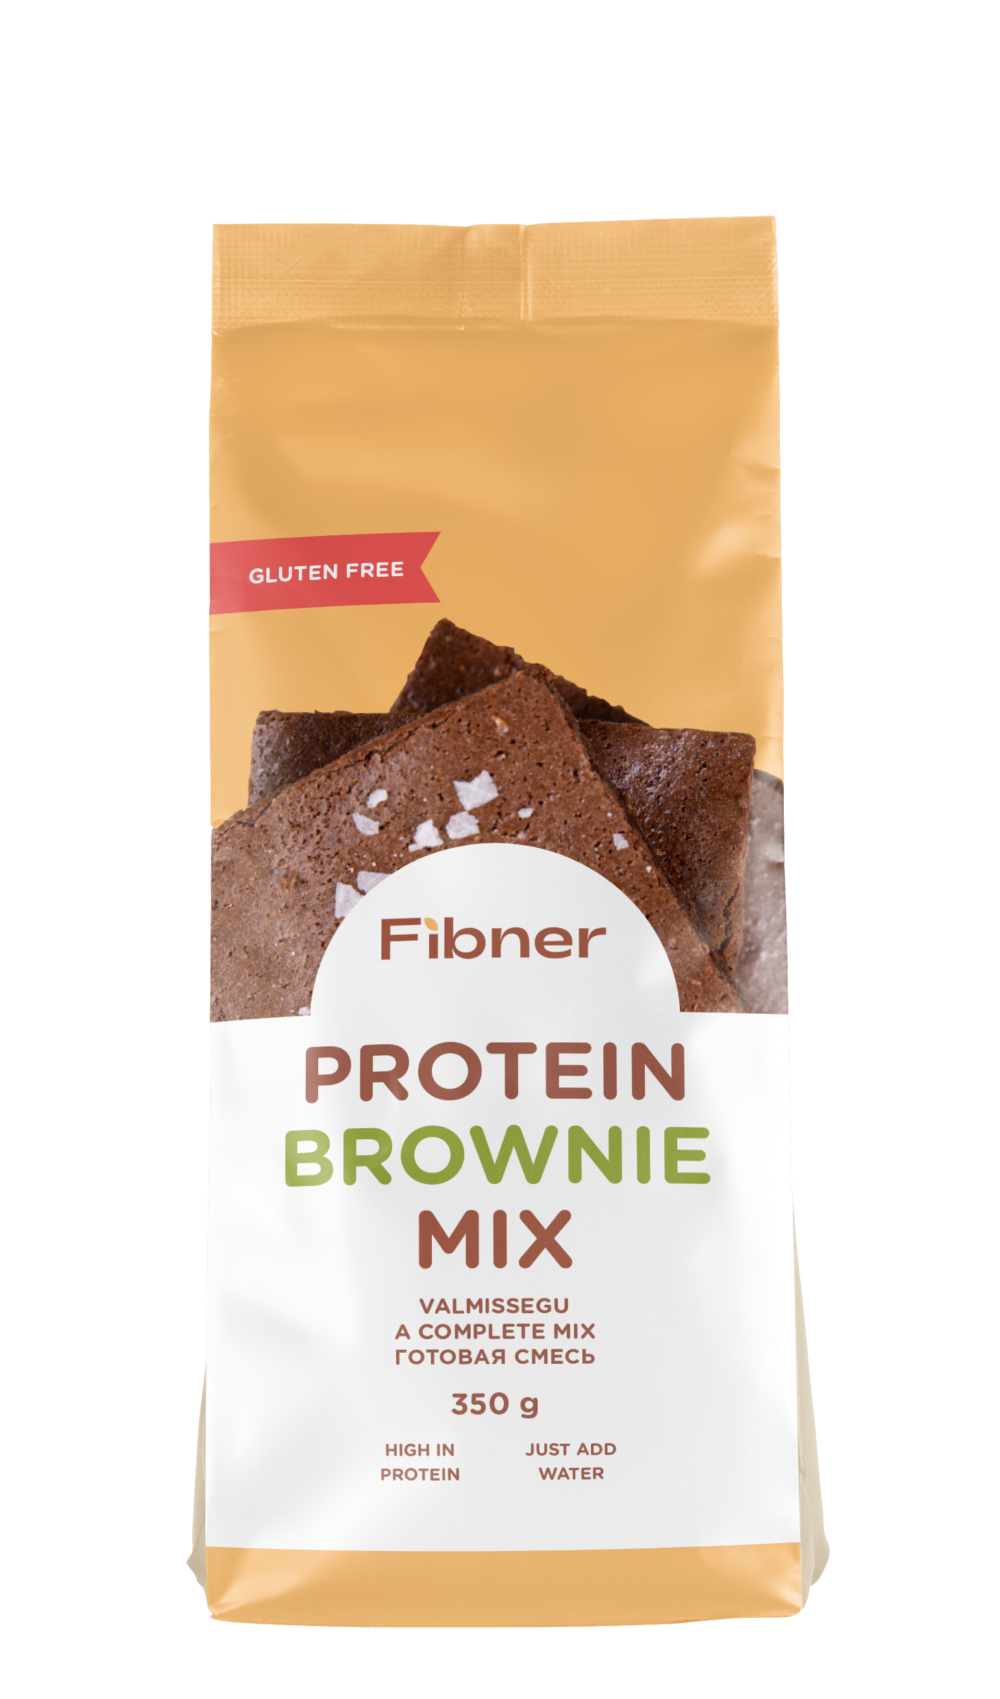 Gluten free protein brownie